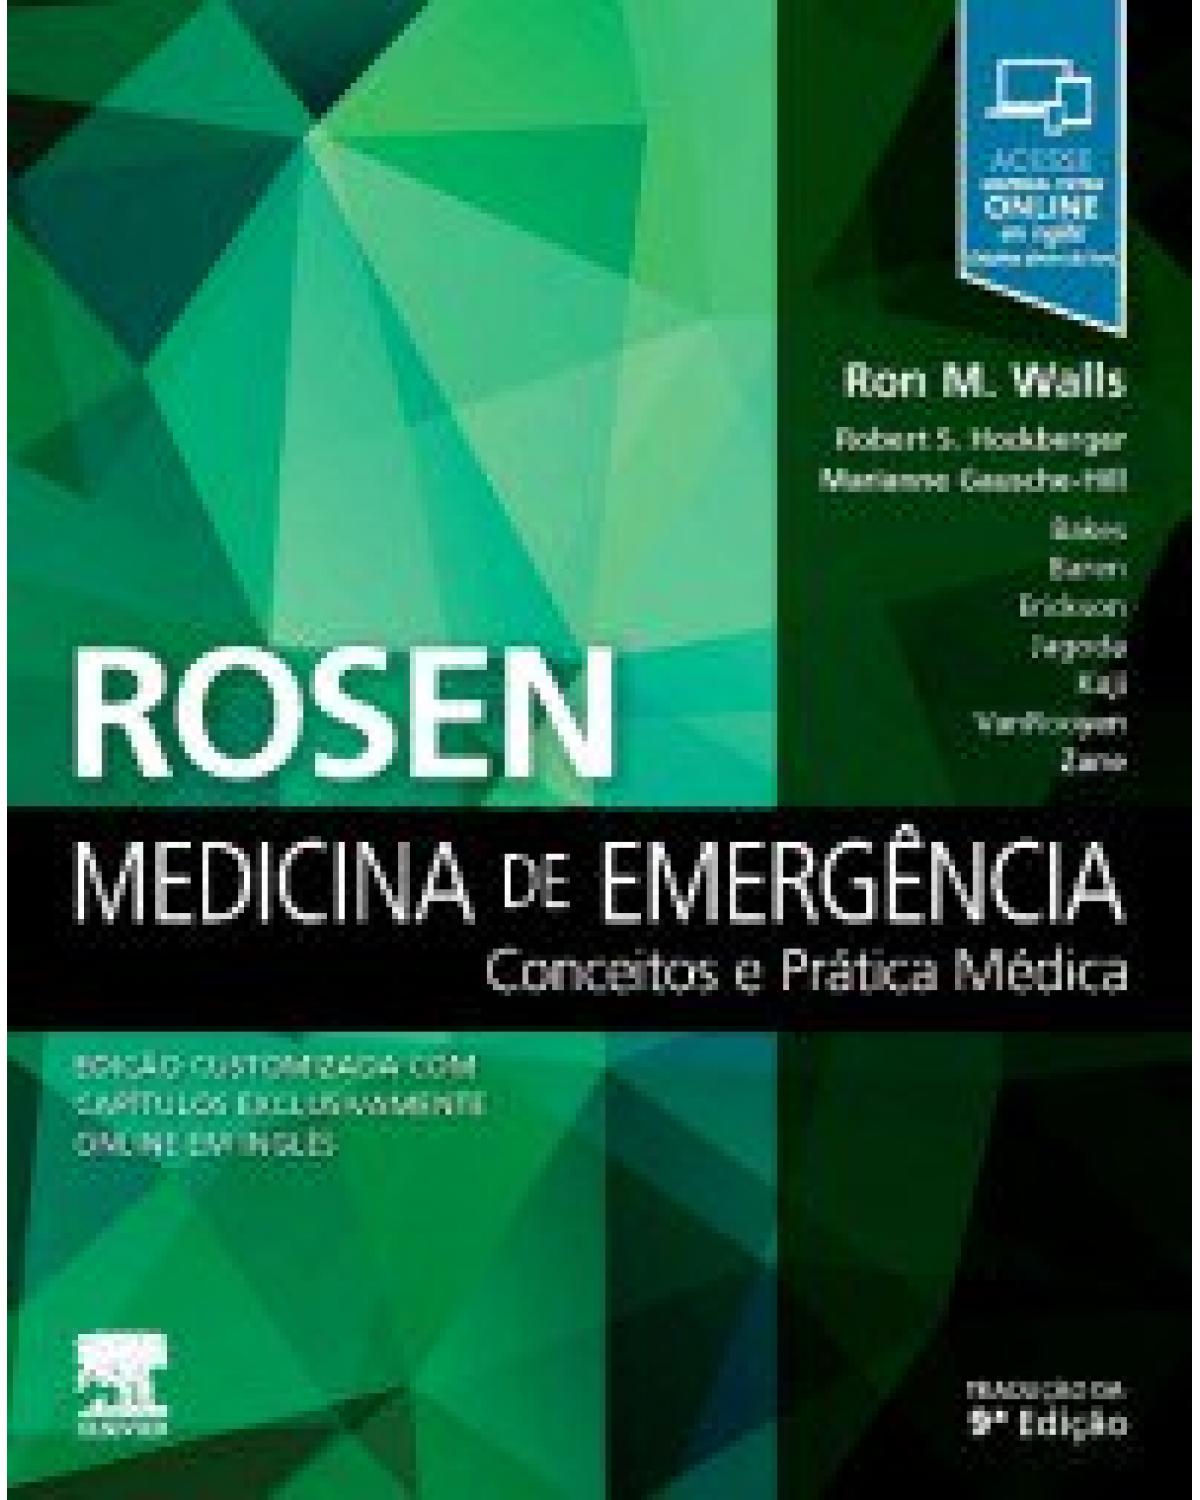 Rosen - Medicina de emergência - conceitos e prática médica - 9ª Edição | 2019